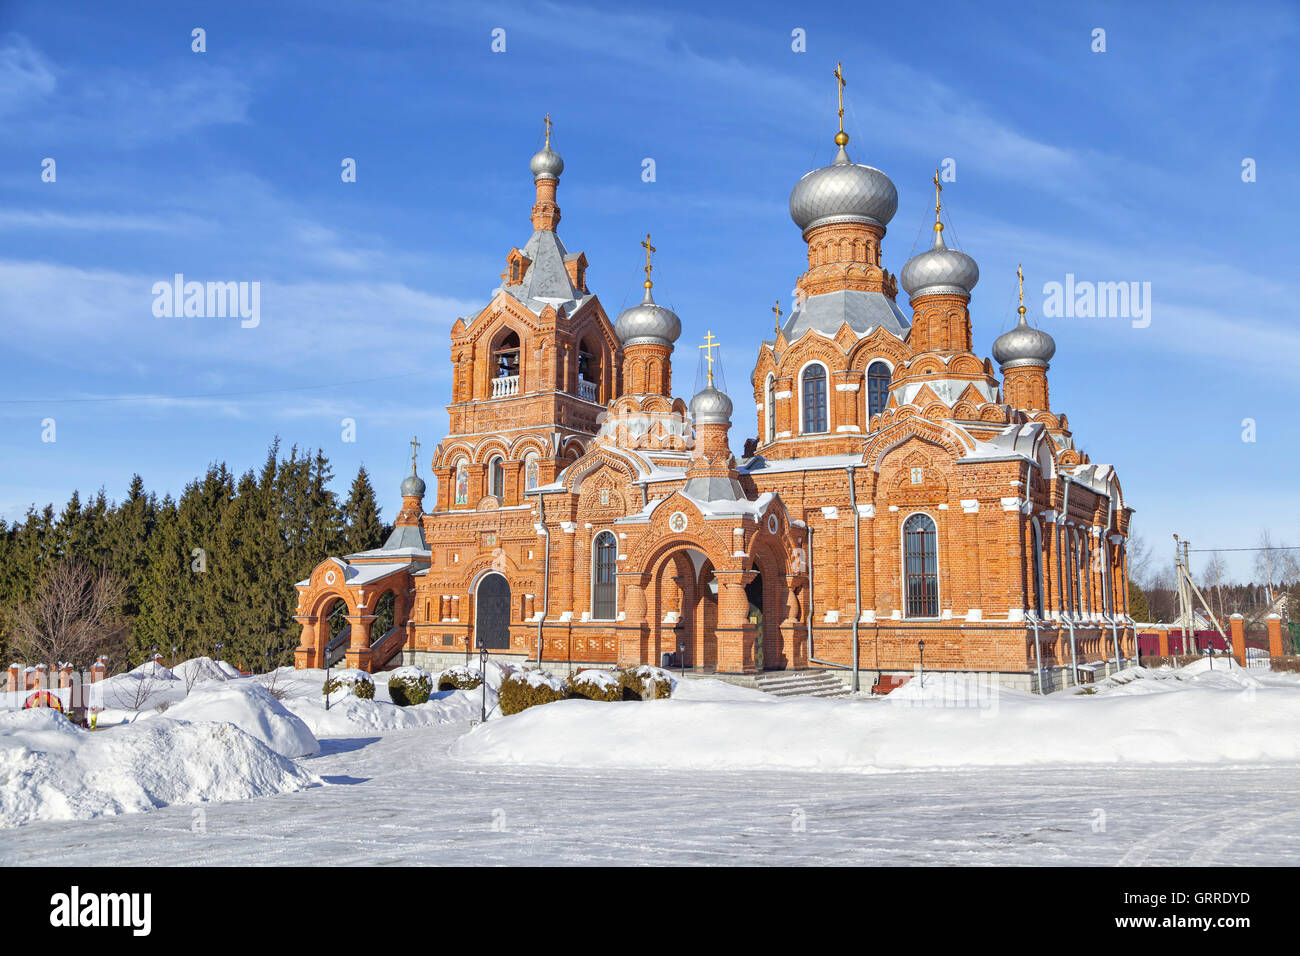 Dans l'église en brique rouge, Darna village Istra district, région de Moscou, Russie Banque D'Images